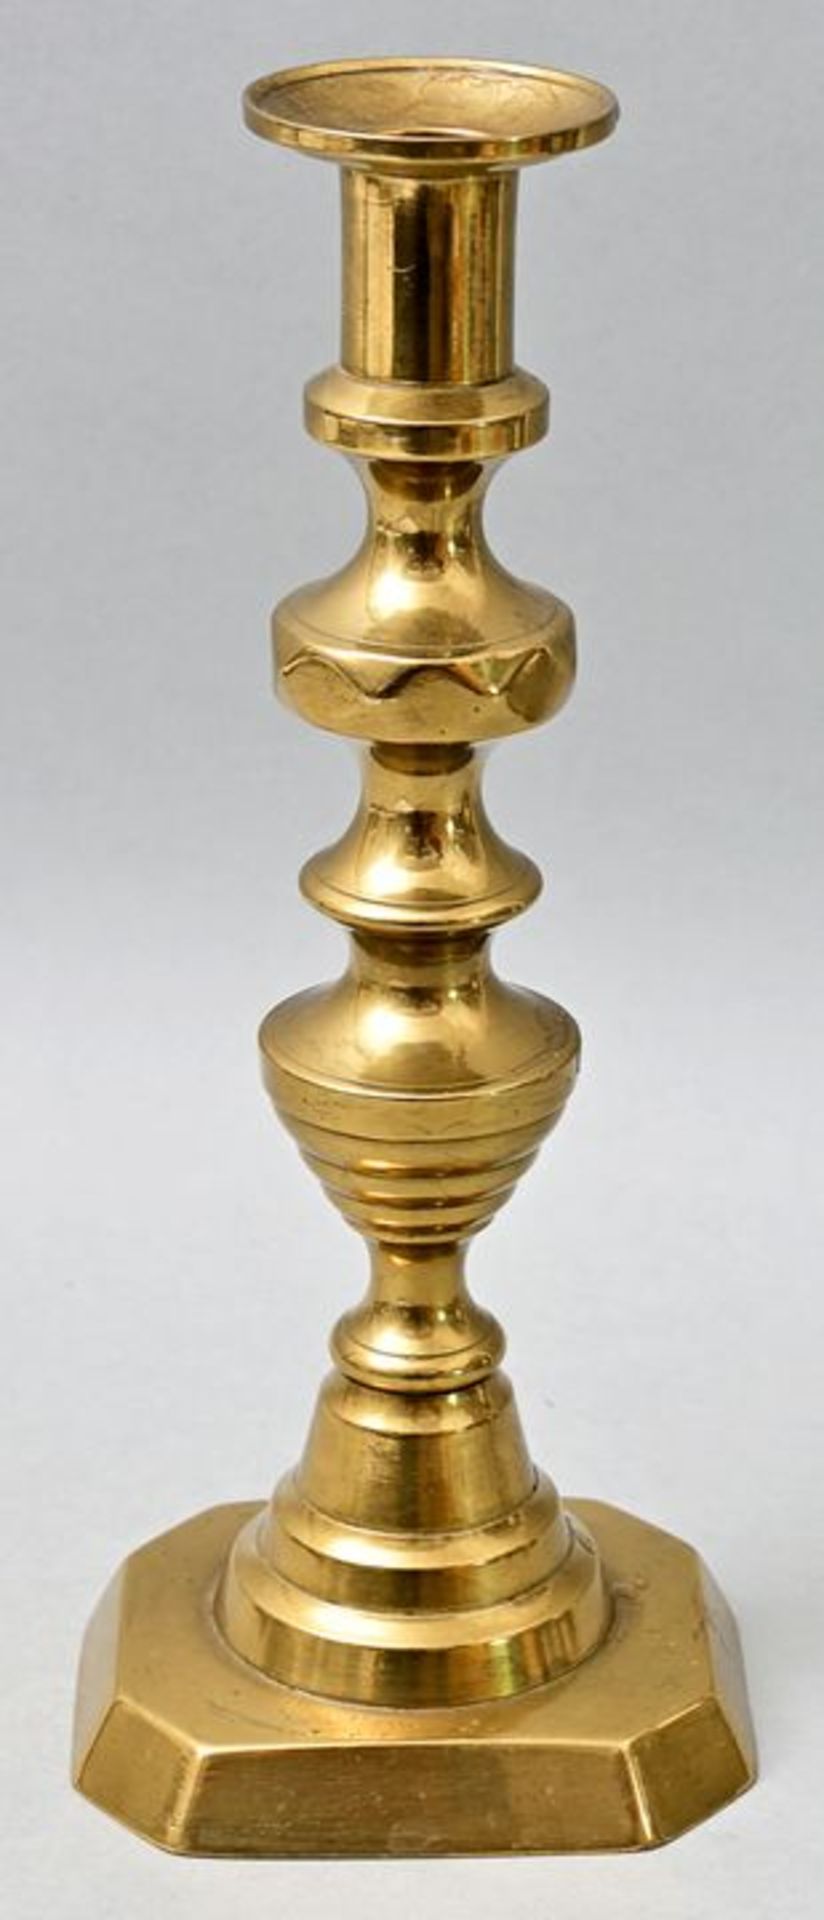 Messingleuchter/ brass candlestick